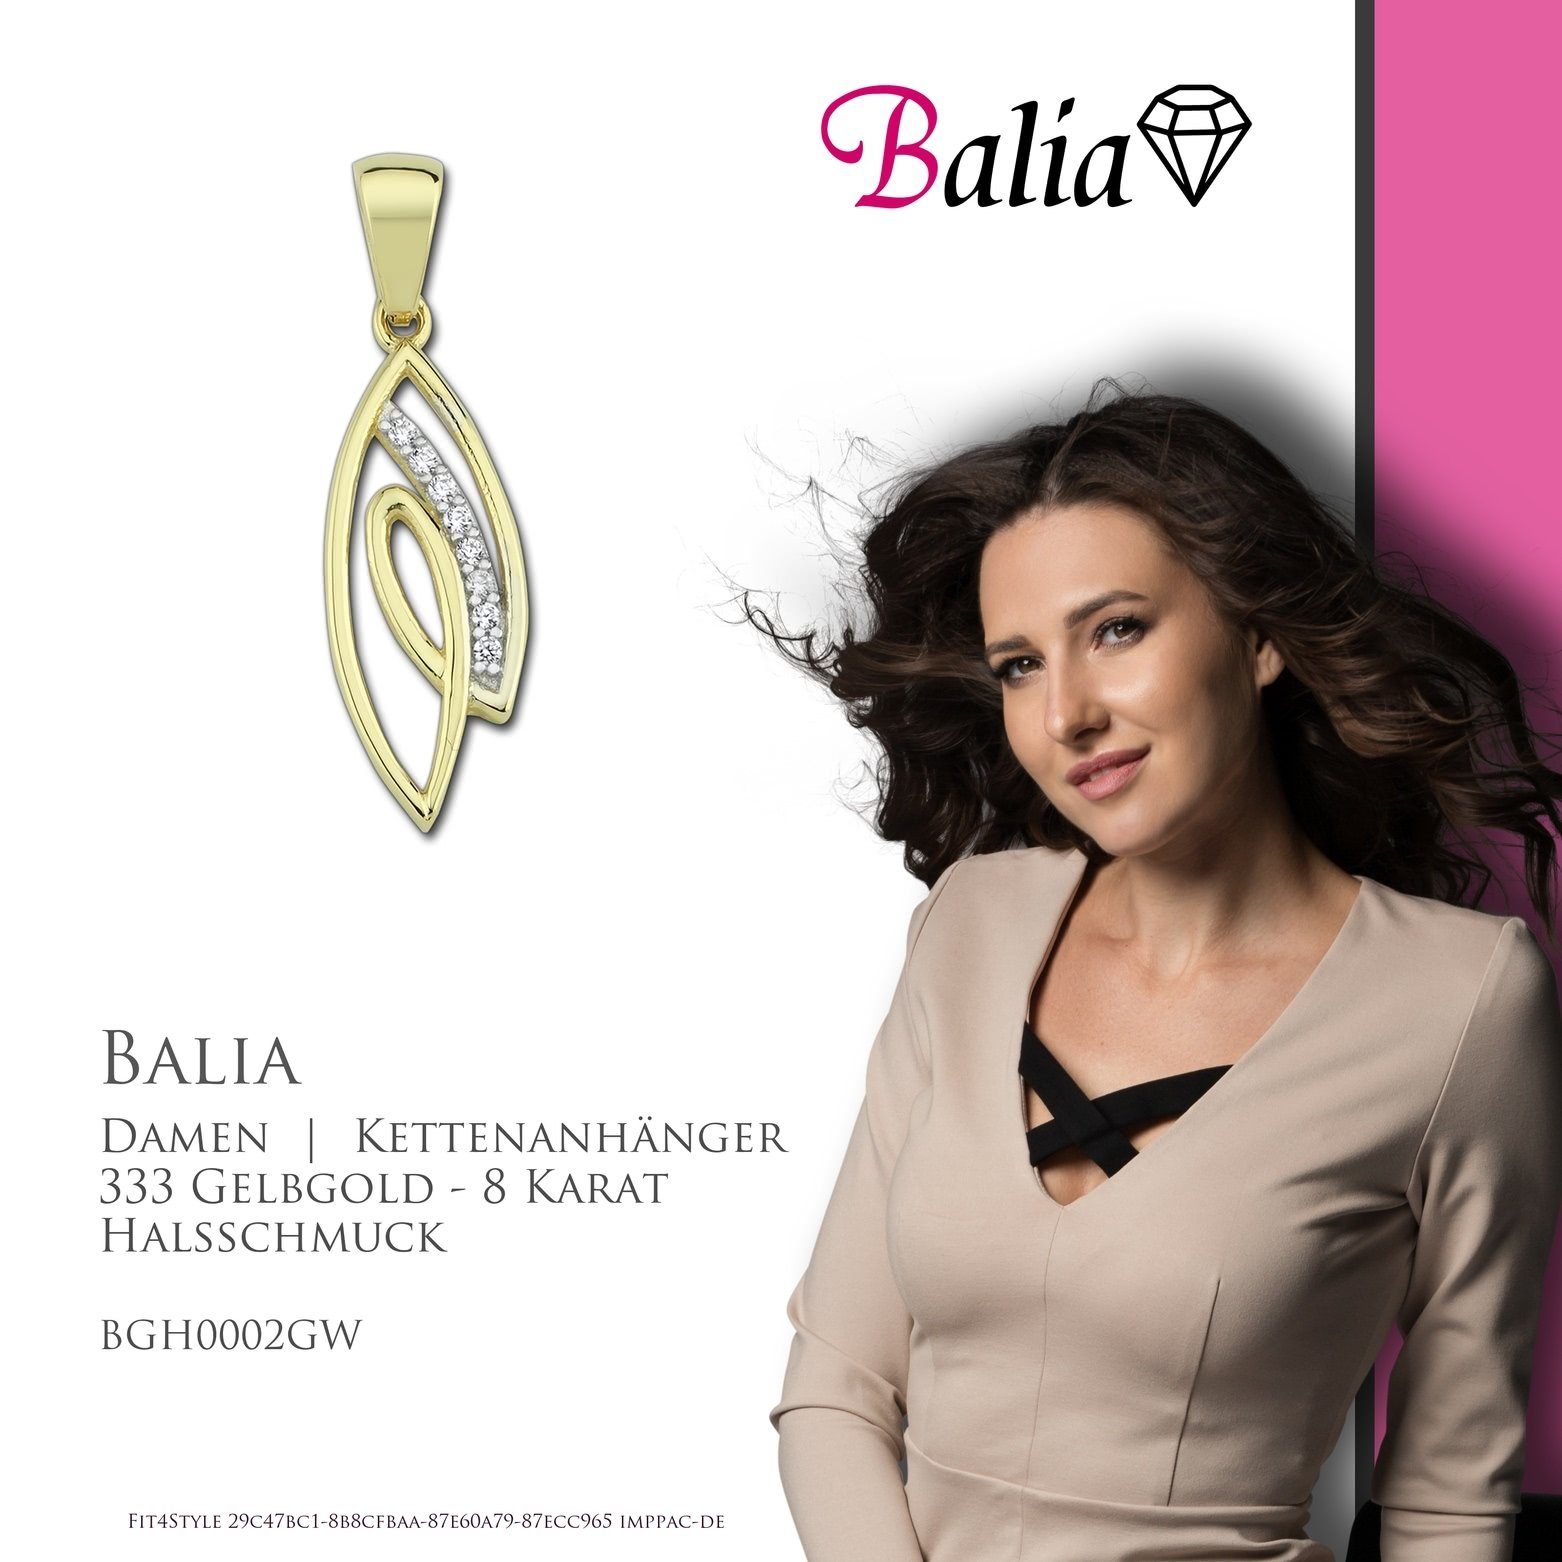 8K Damen Gold, Balia Balia - für Kettenanhänger ca. 8 Damen Kettenanhänger 2,6cm, Gelbgold Karat, Kettenanhänger 333 (Blatt) Farbe: